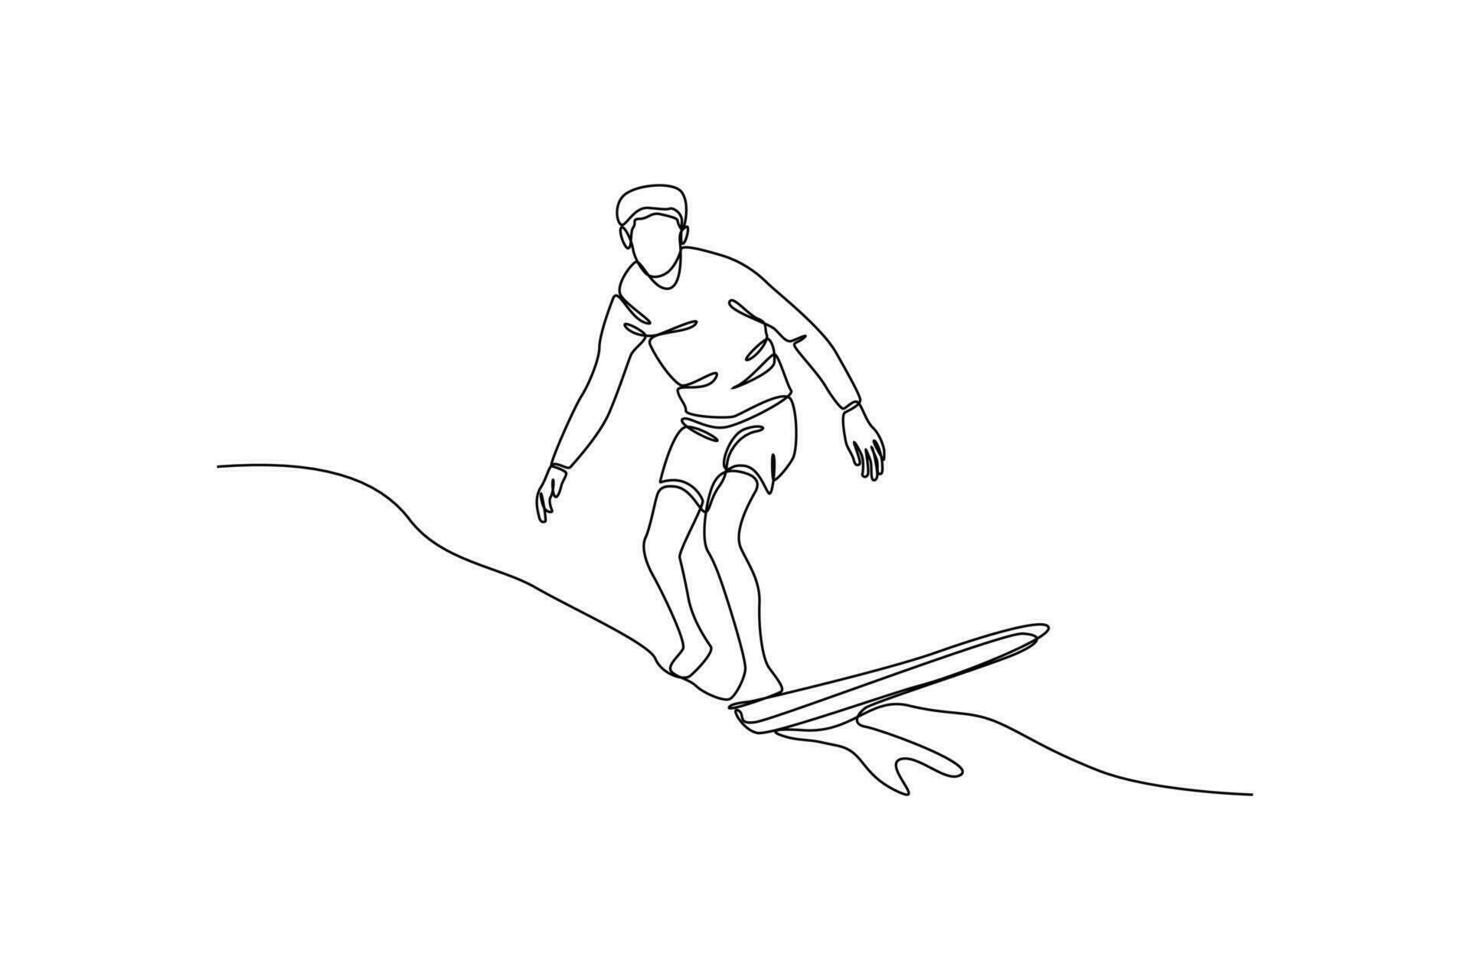 Célibataire un ligne dessin content garçon en jouant le surf sur le plage dans été vacances. été plage concept. continu ligne dessiner conception graphique vecteur illustration.